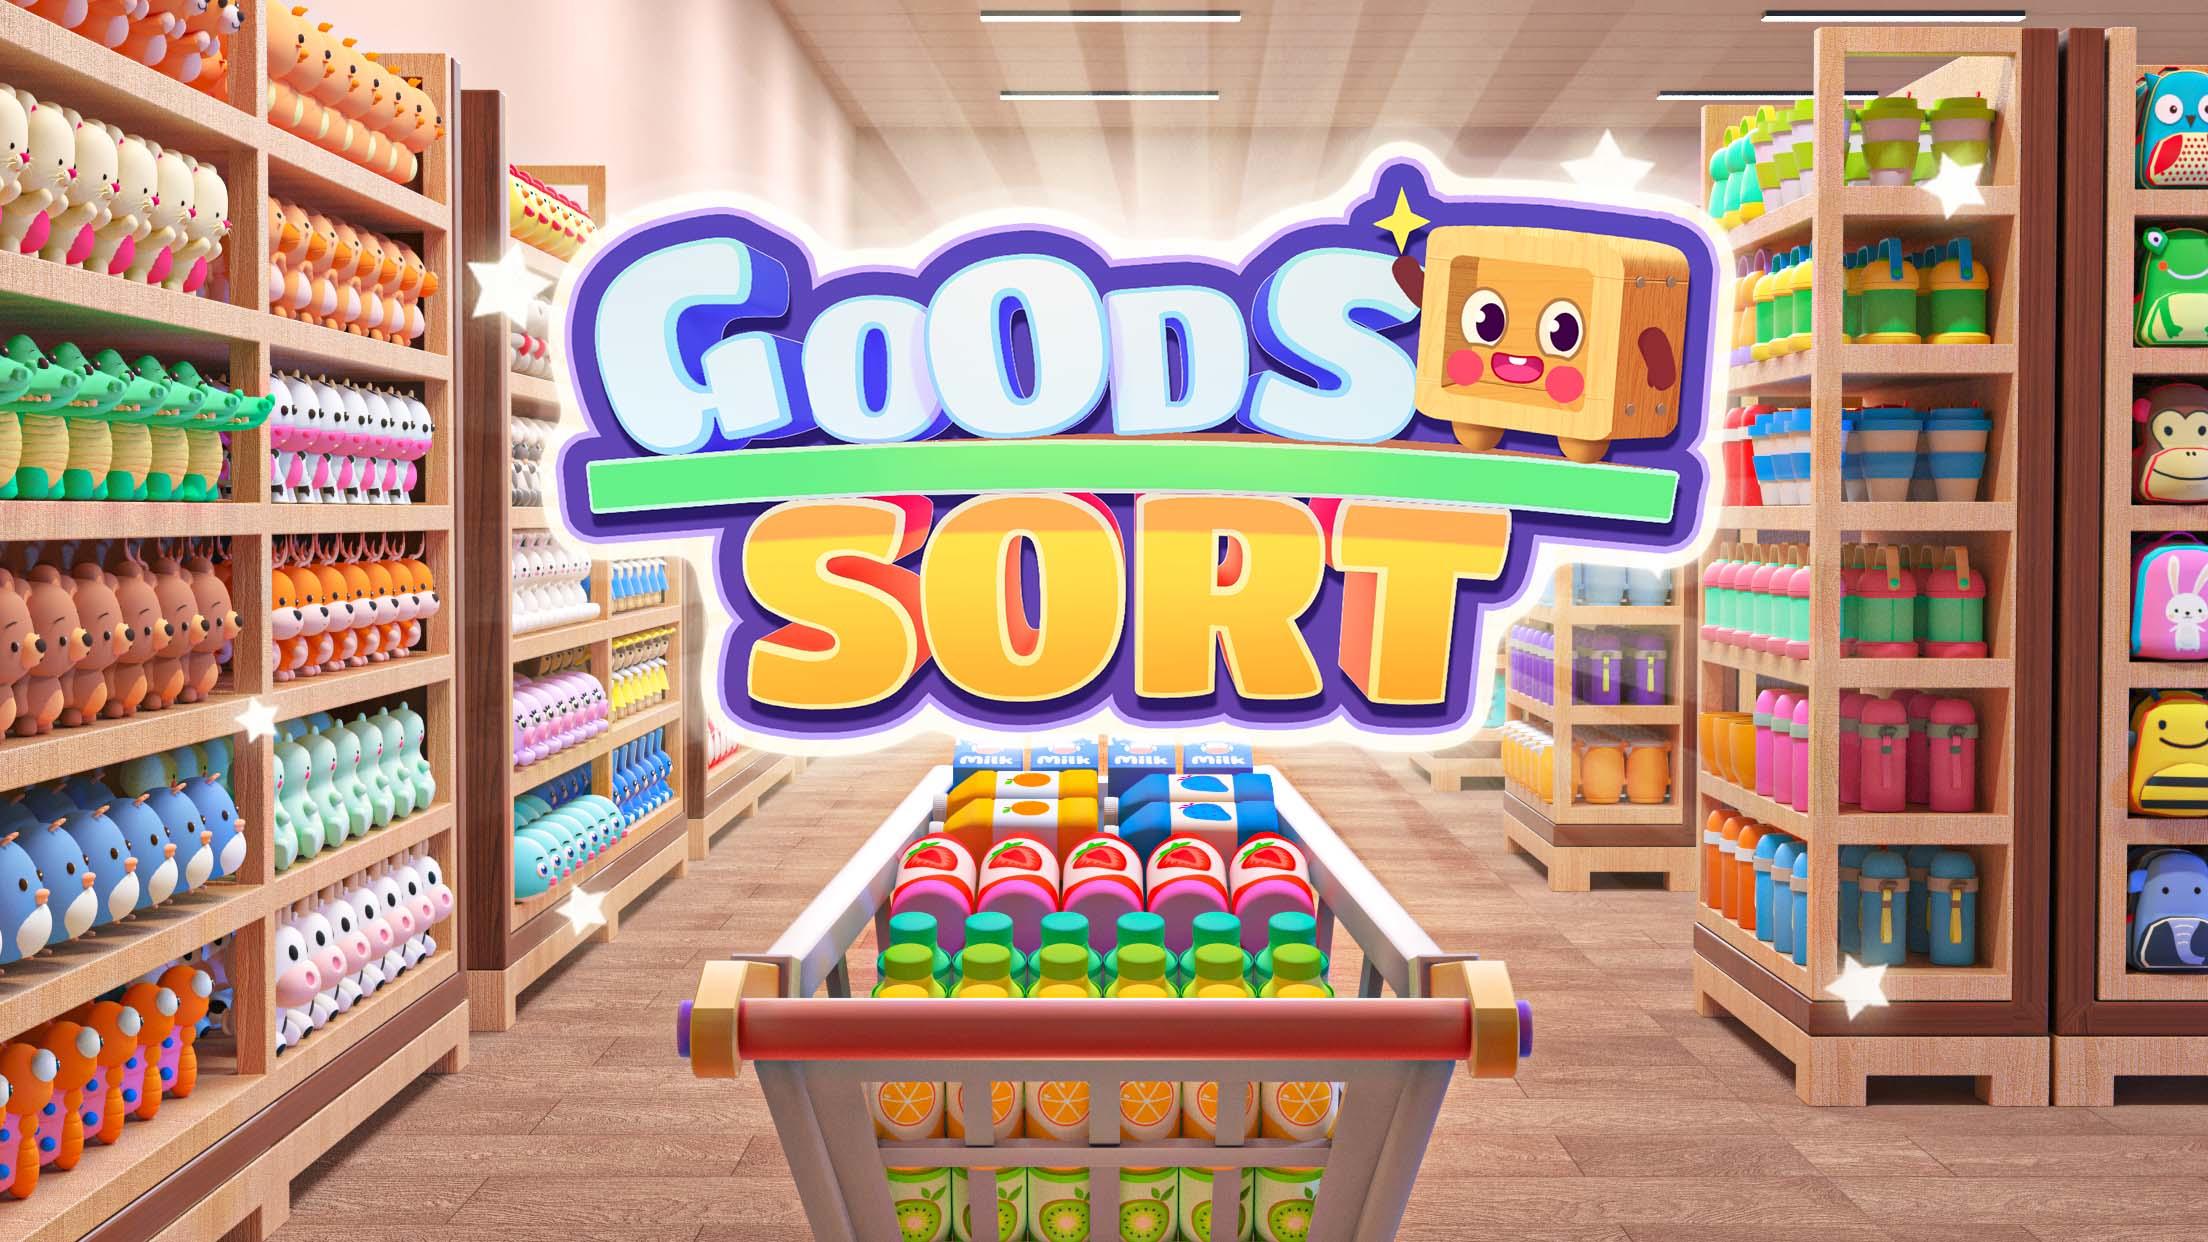 Screenshot 1 of Goods Sort™ - Sorting Games 3.602